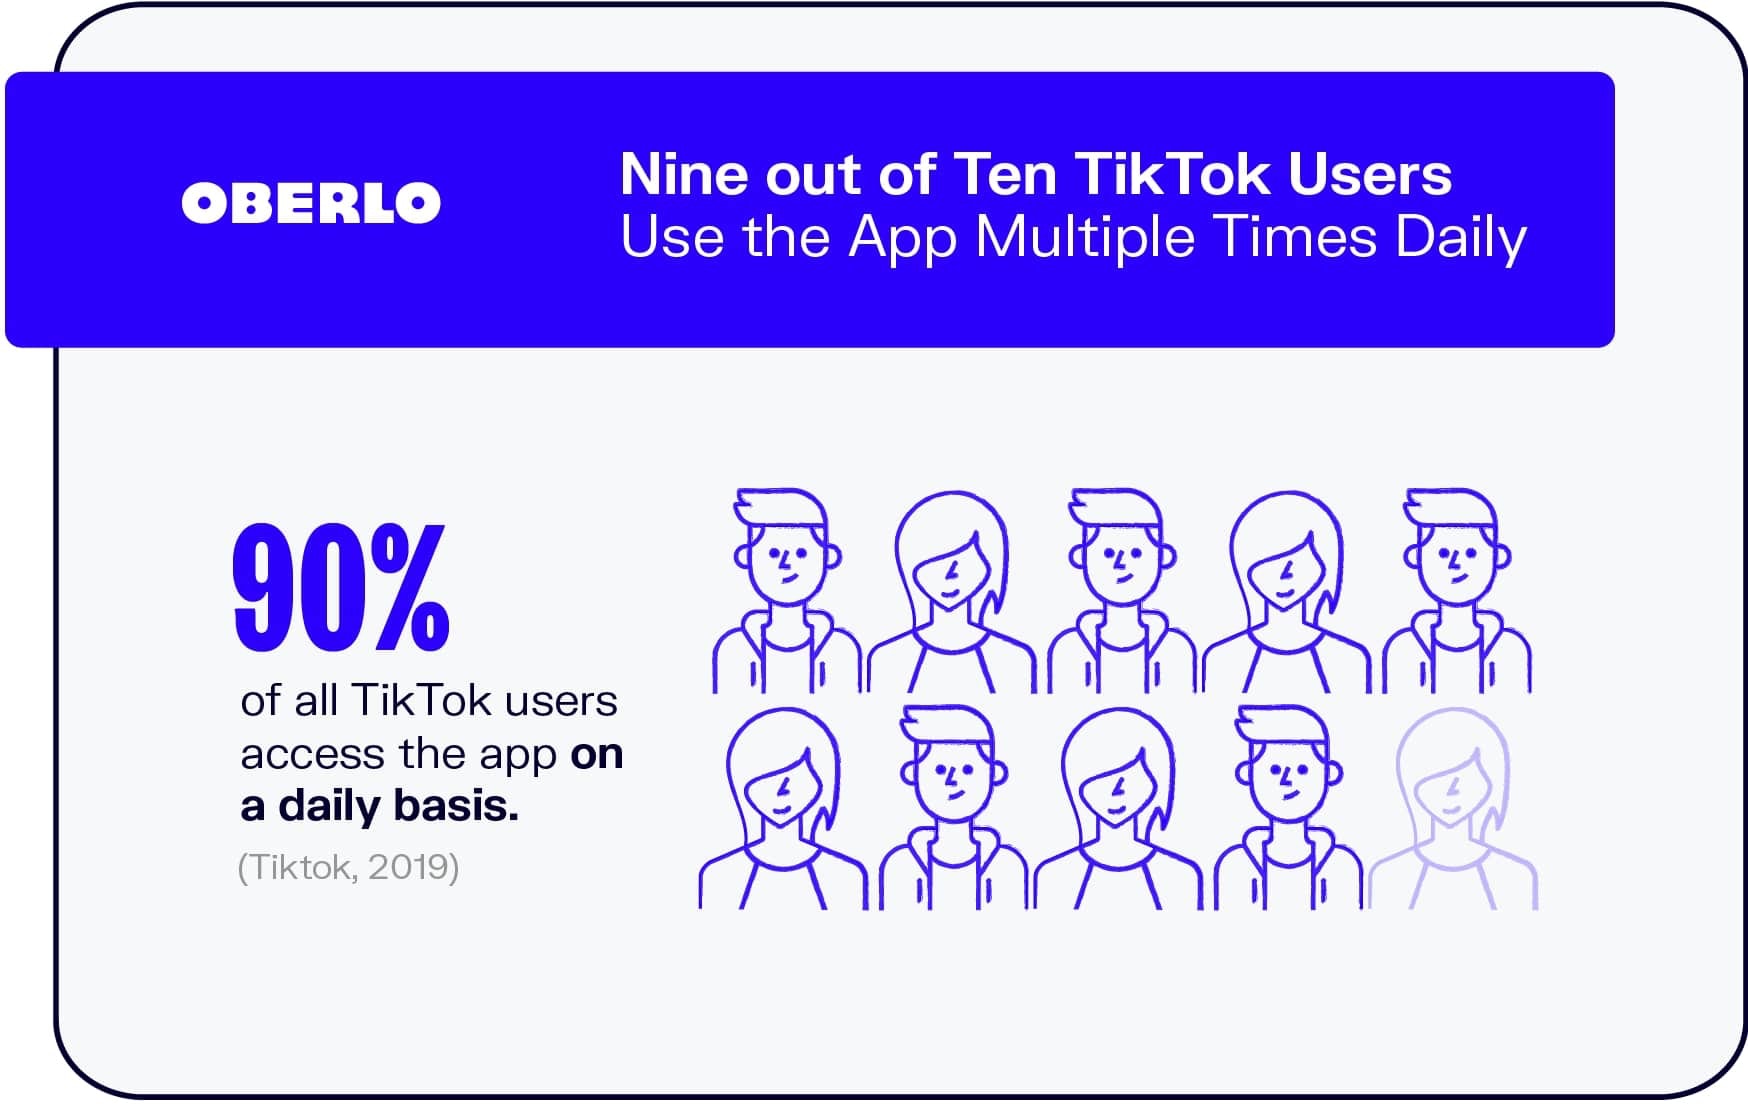 十分之九的TikTok用户每天使用该应用多次